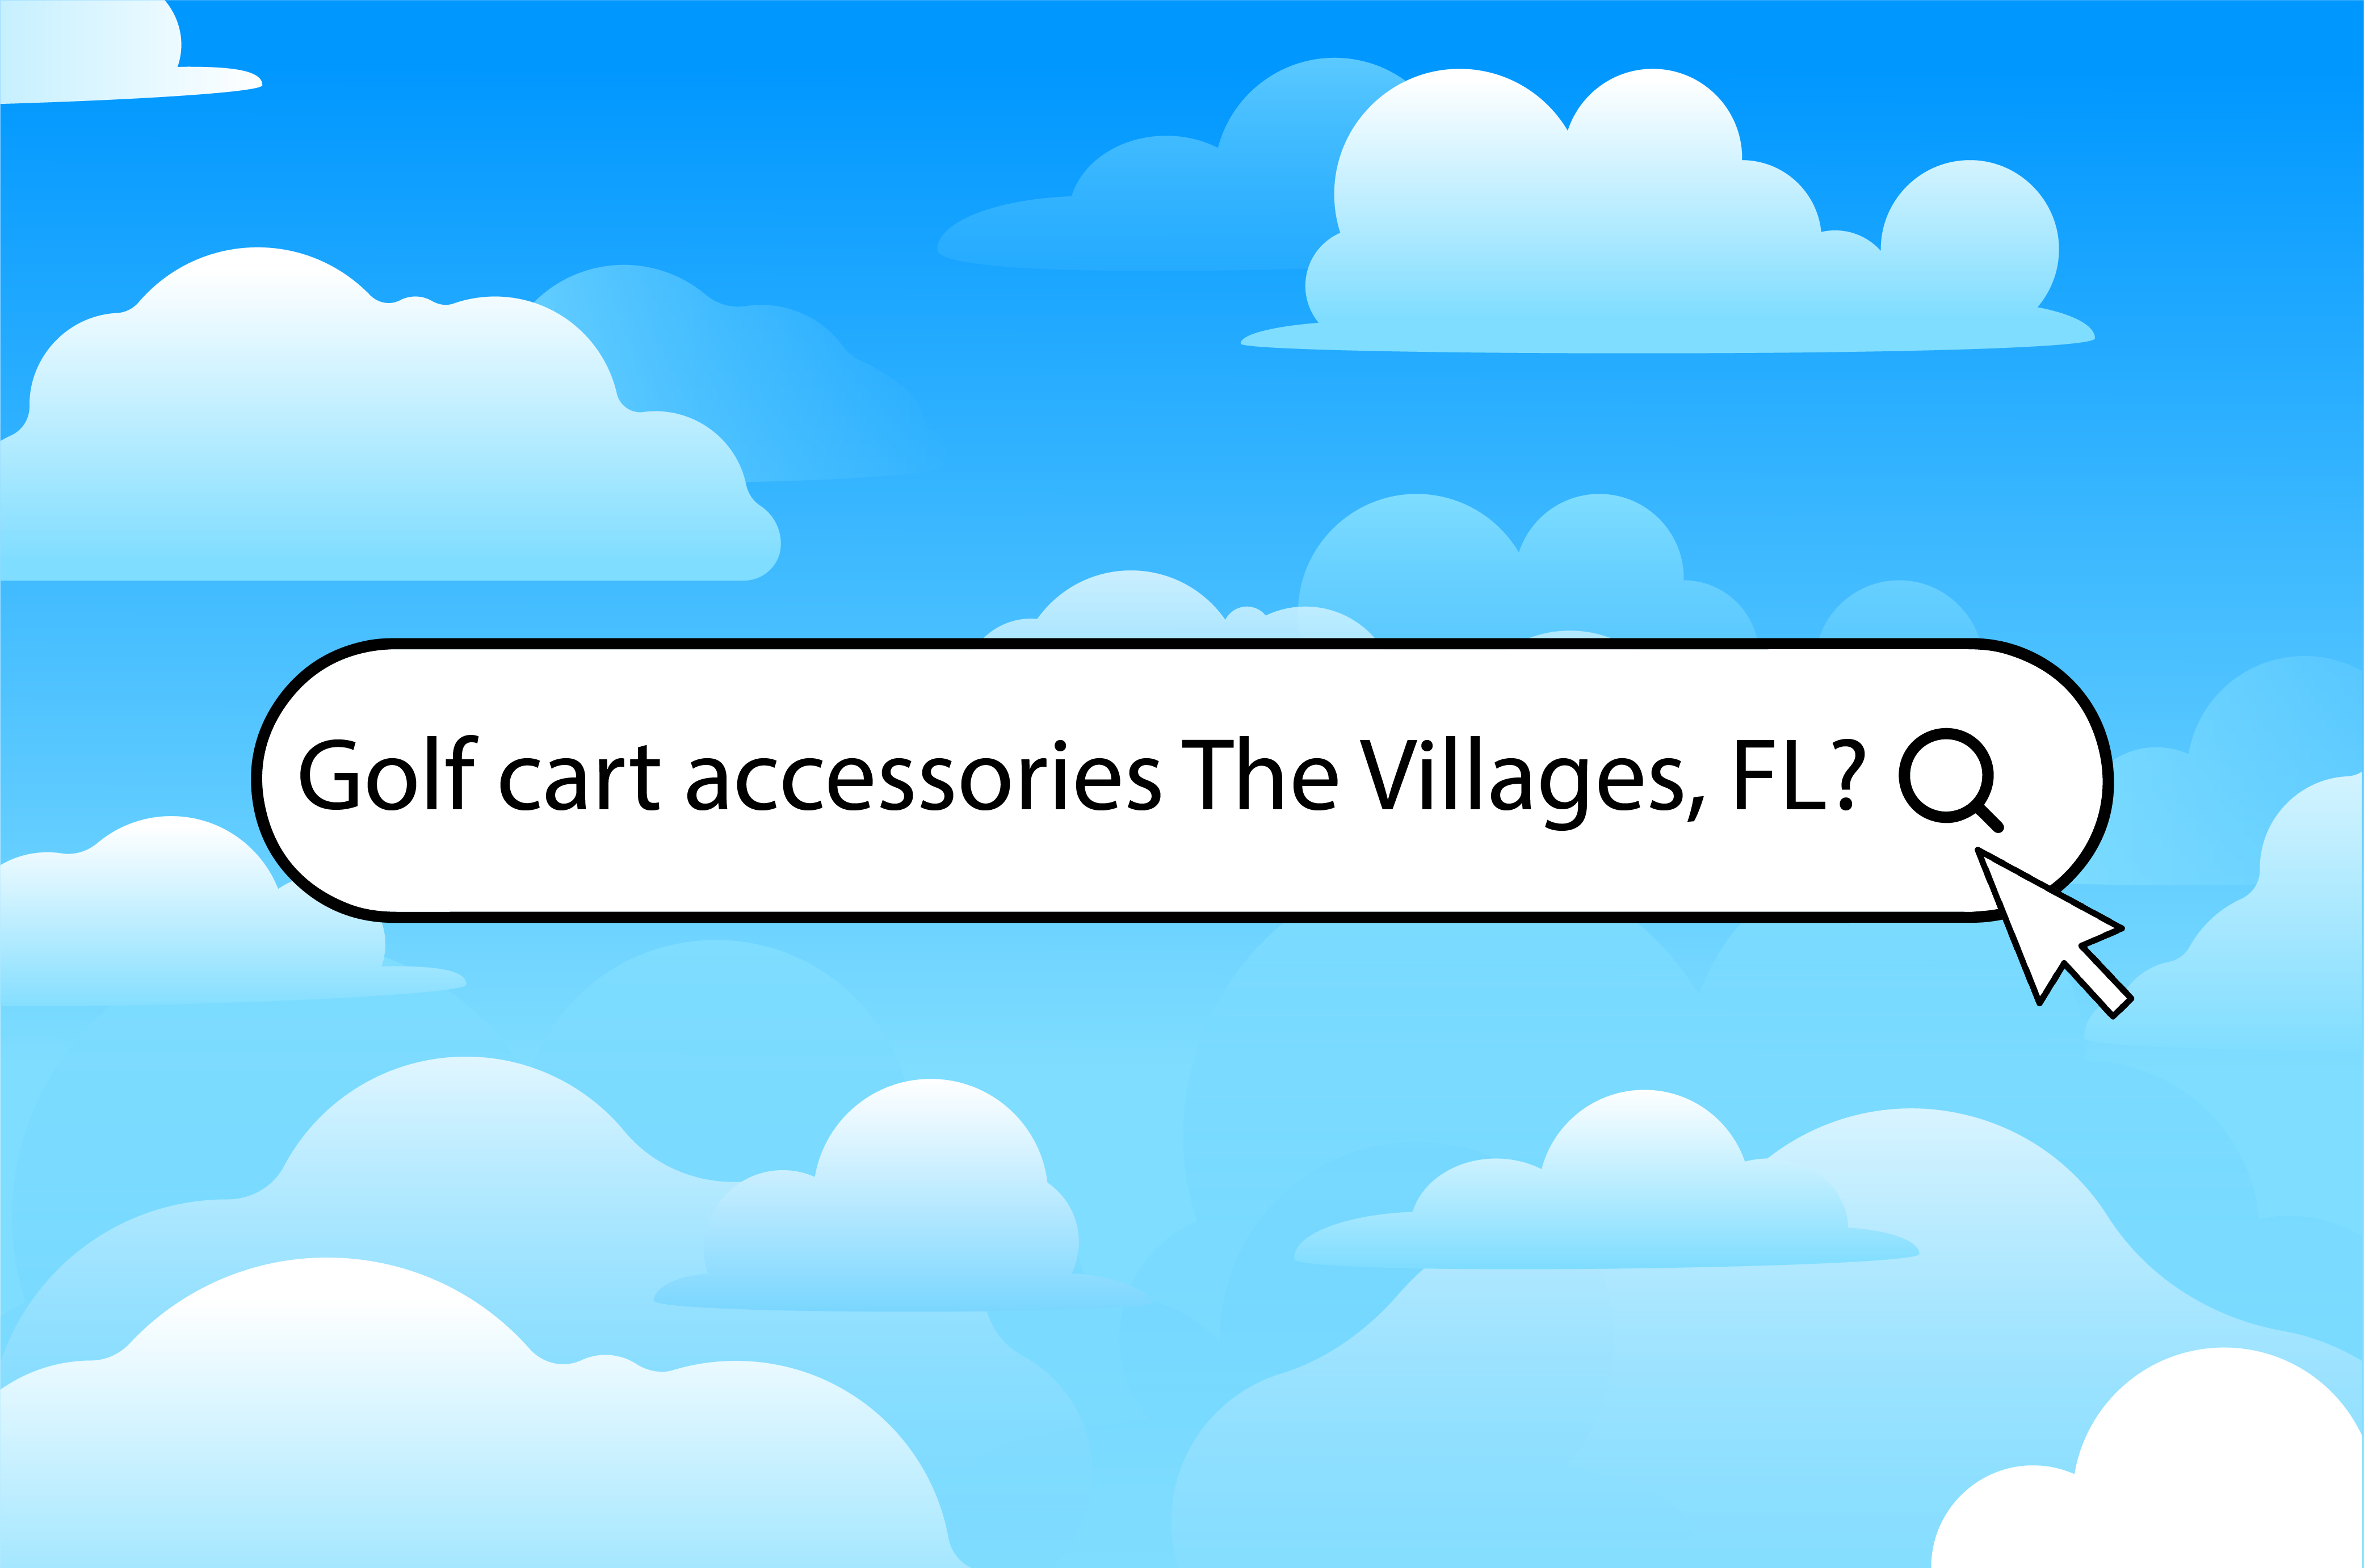 Three ways to find golf cart accessories in The Villages, FL